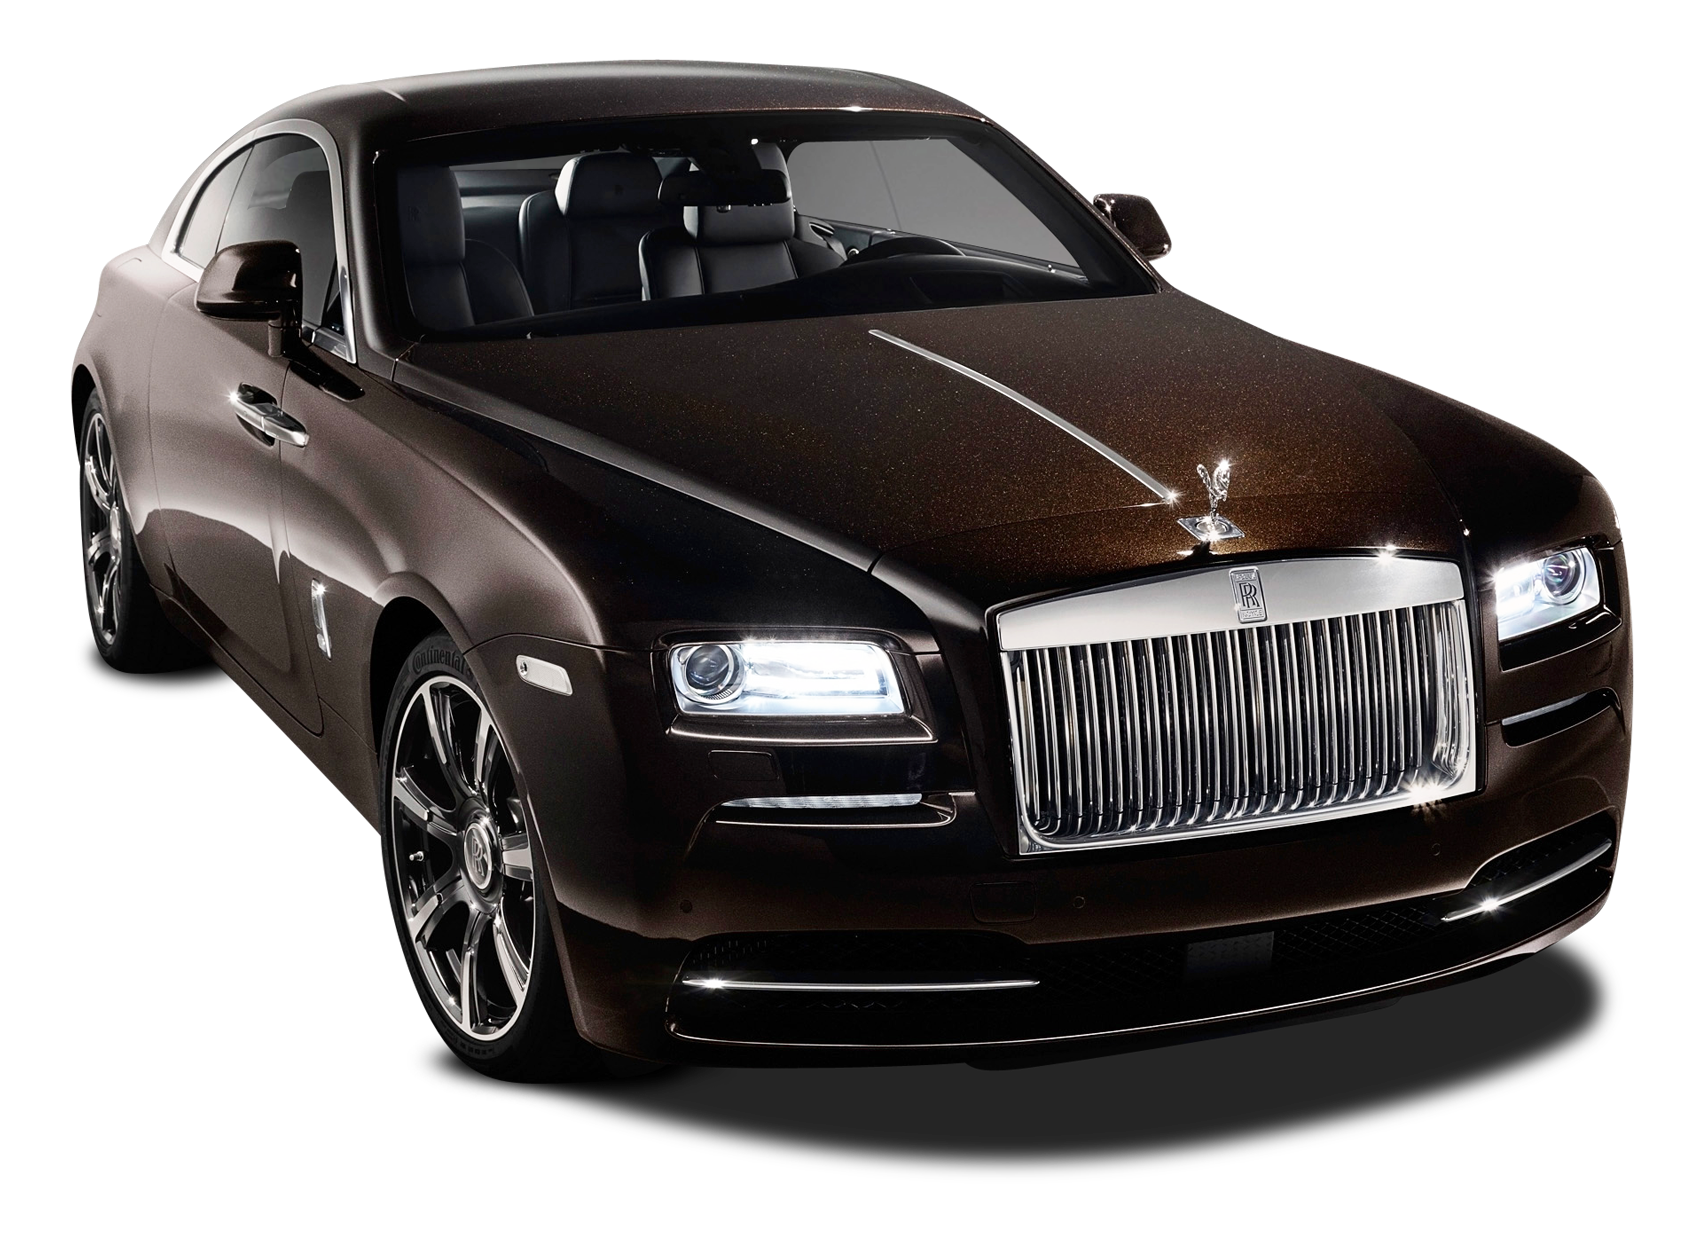 Black Rolls Royce Car PNG Transparent Image